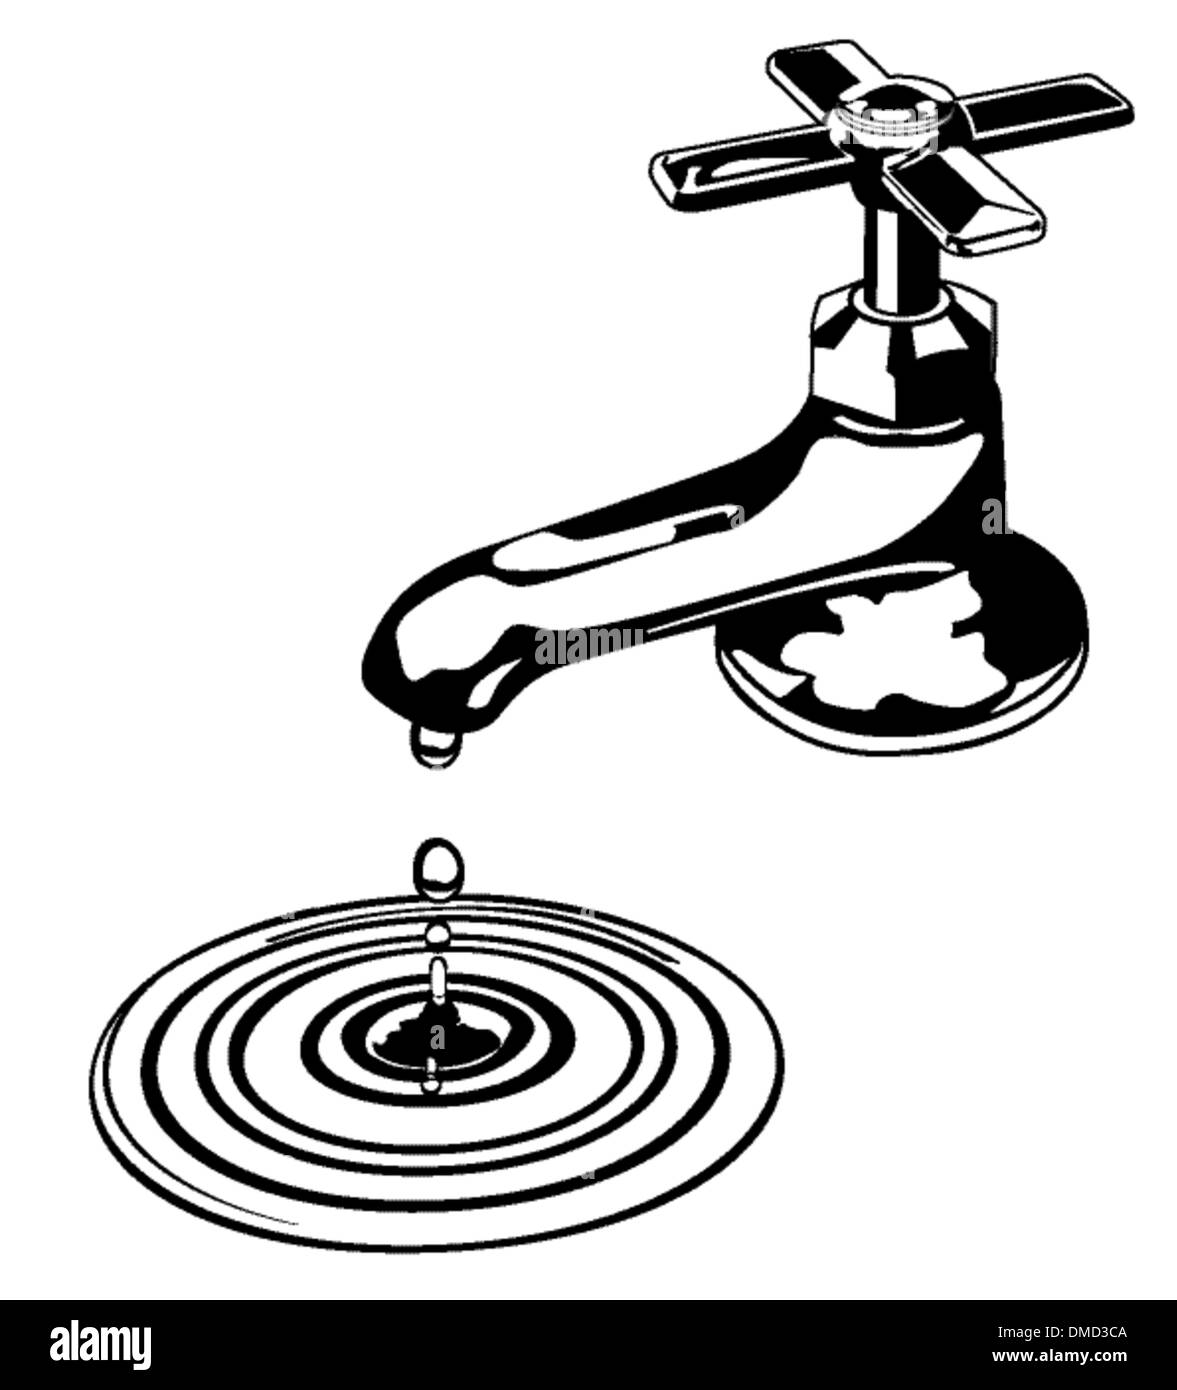 water tap Stock Vector